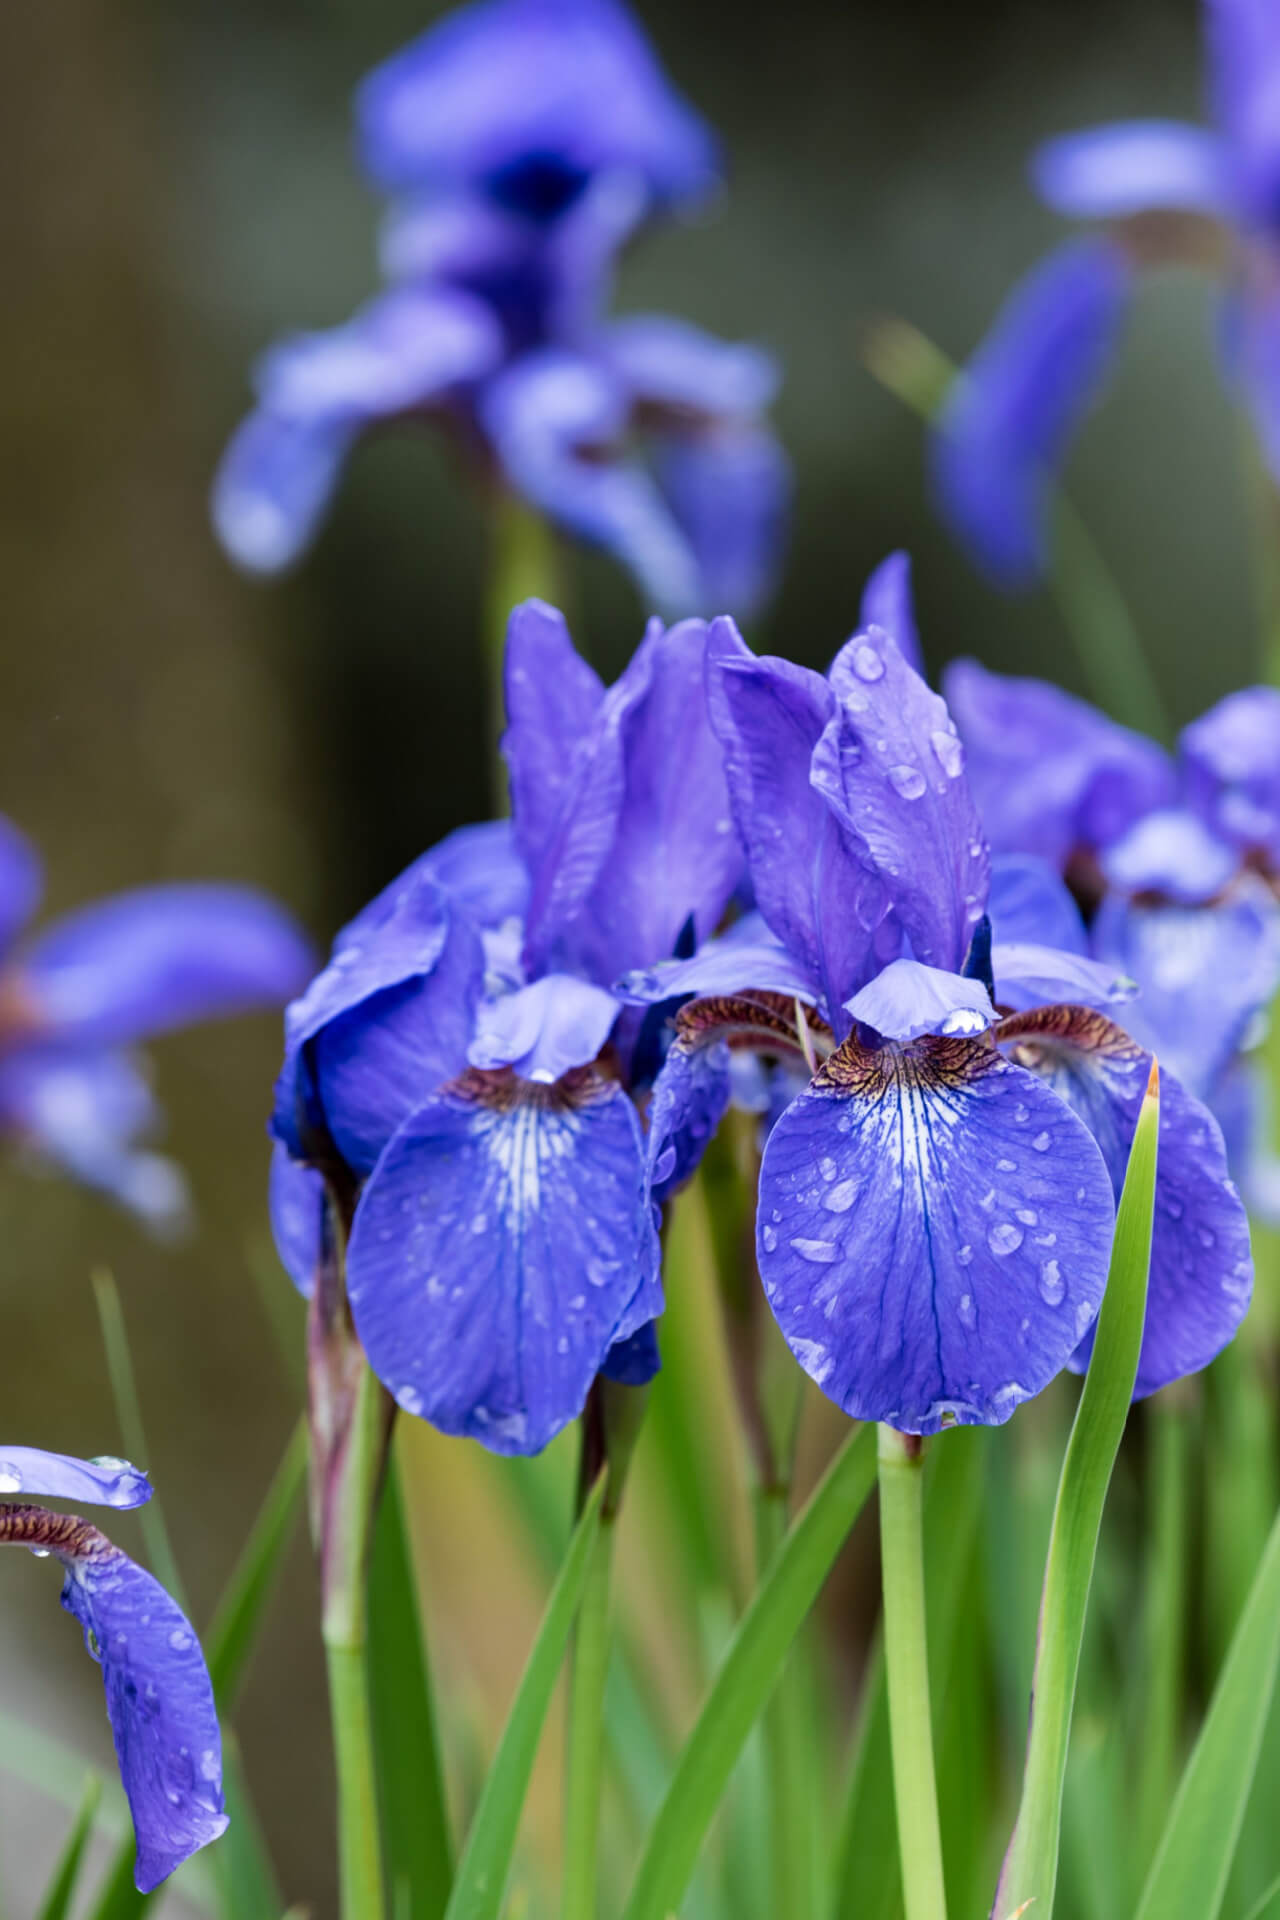 Siberian Iris For Sale Online  Buy 1 Get 1 Free – Garden Plants